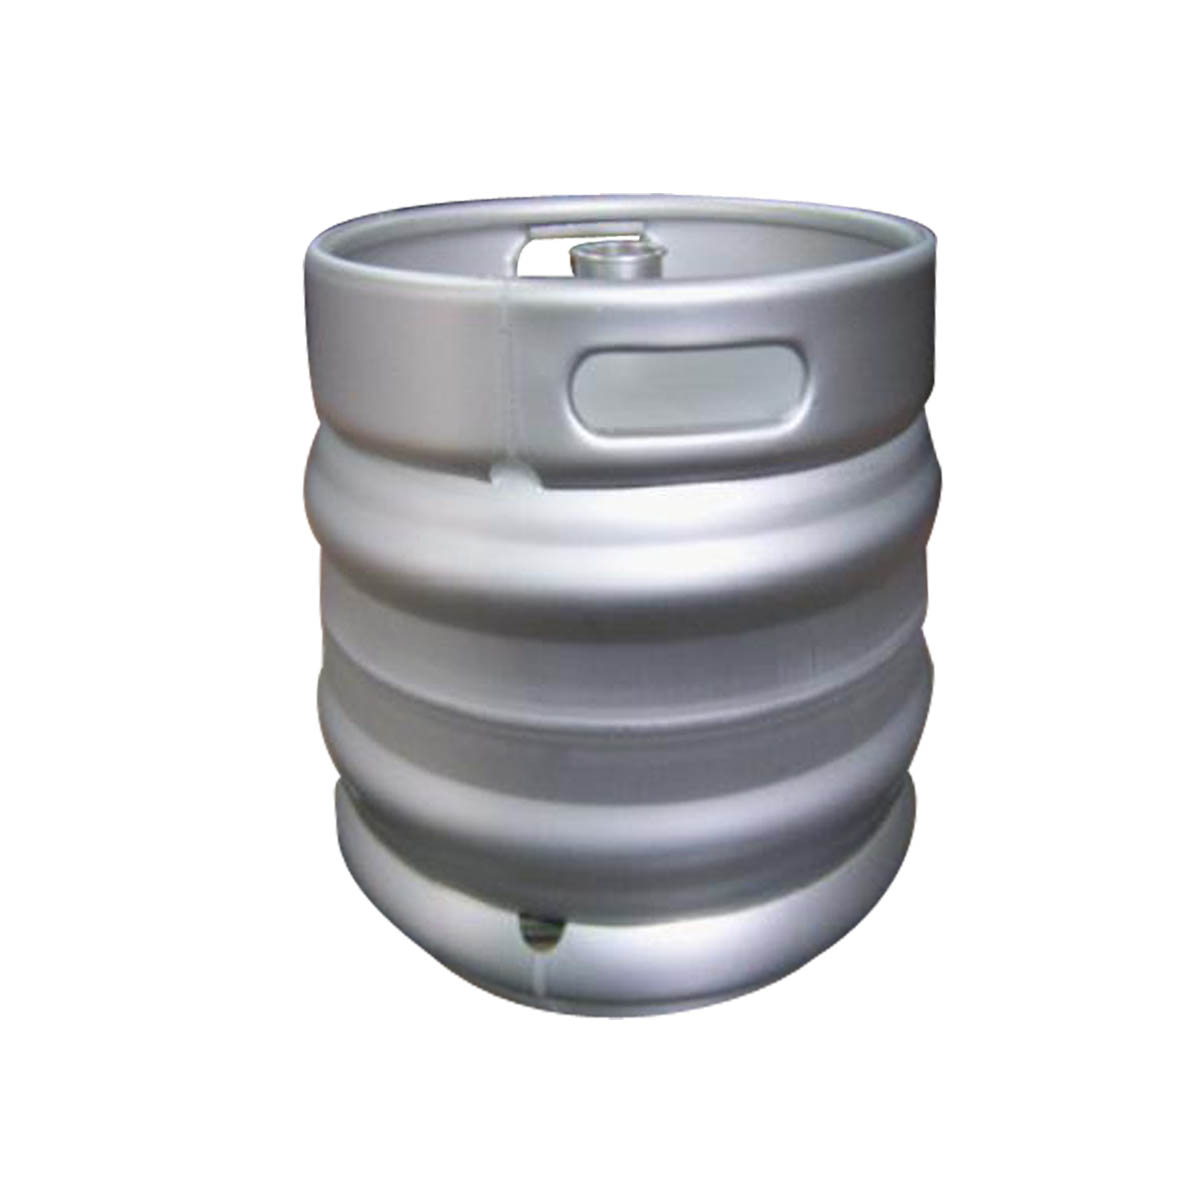 European standard beer keg(30L)